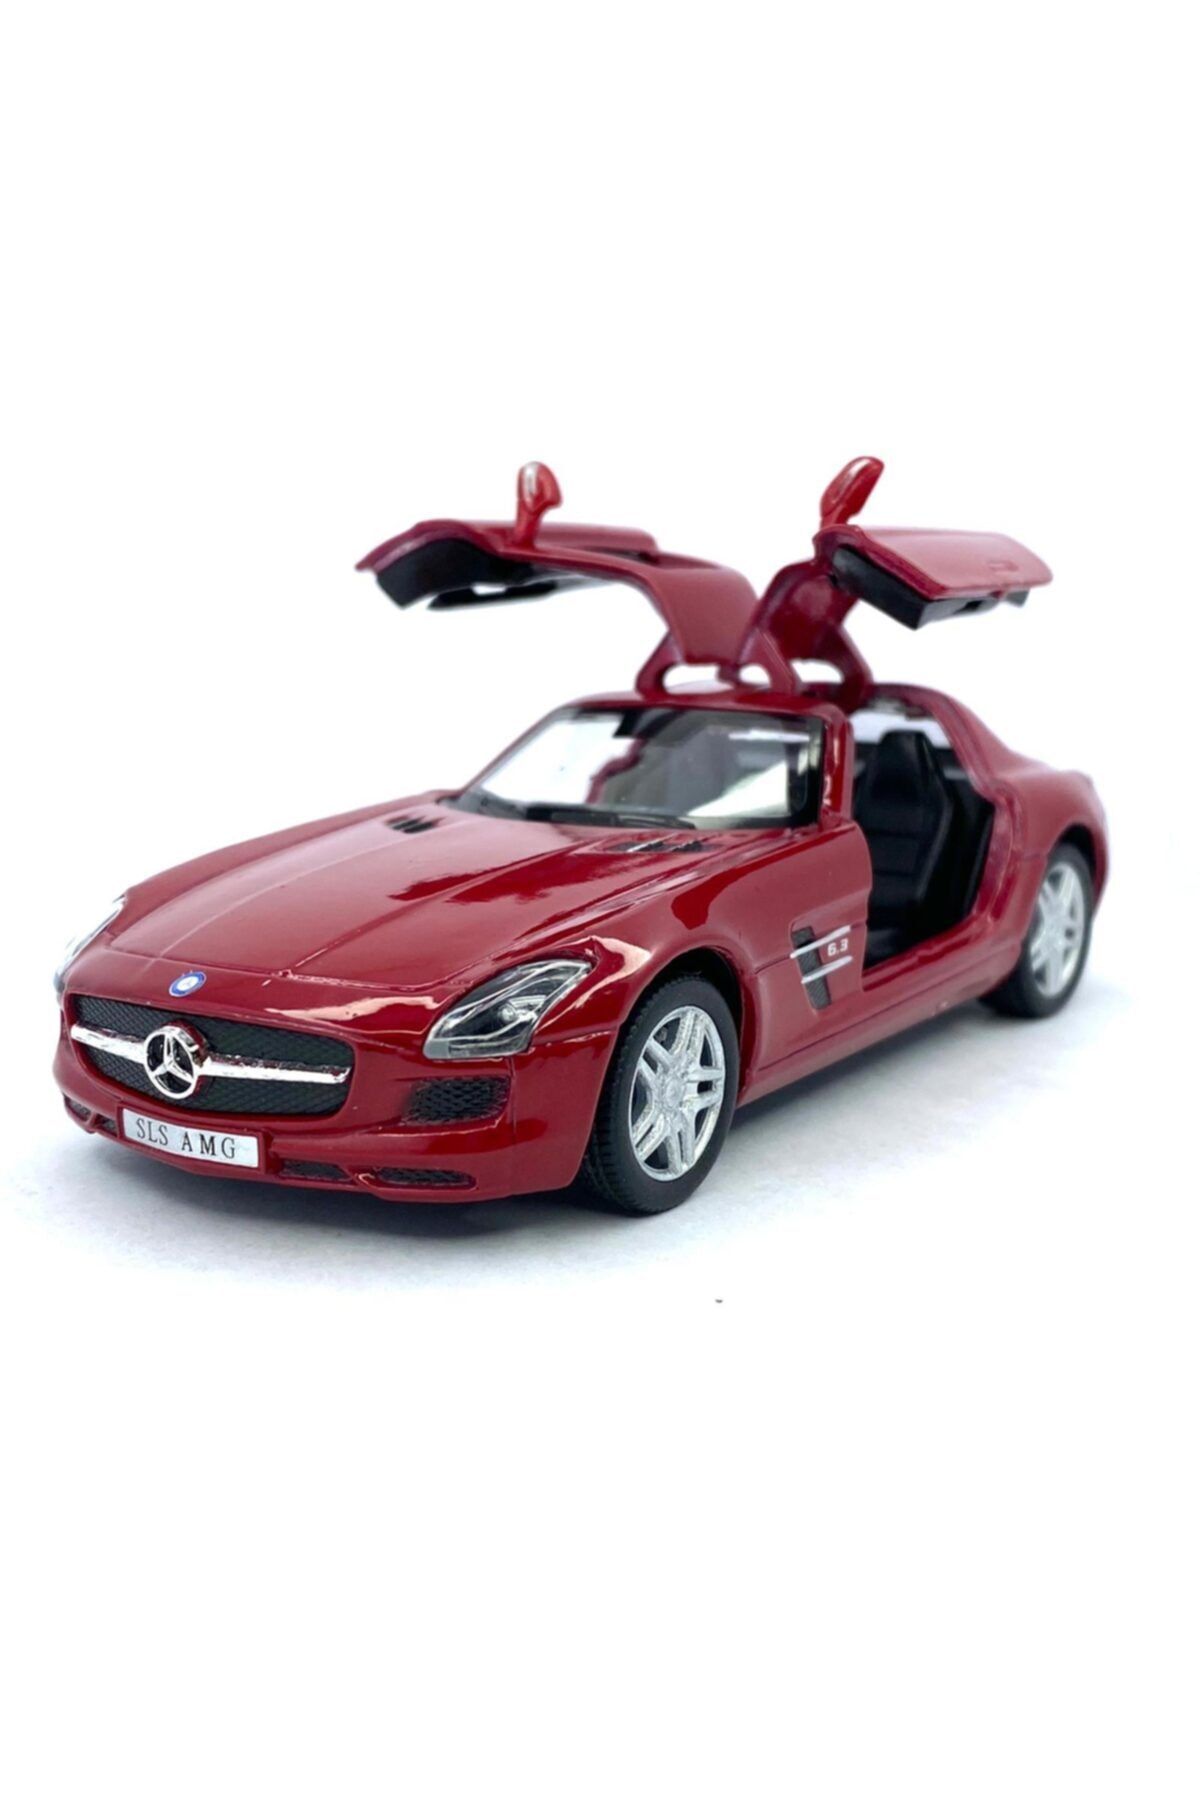 Kinsmart Mercedes - Benz Sls Amg - Çek Bırak 5inch. Lisanslı Model Araba, Oyuncak Araba 1:36